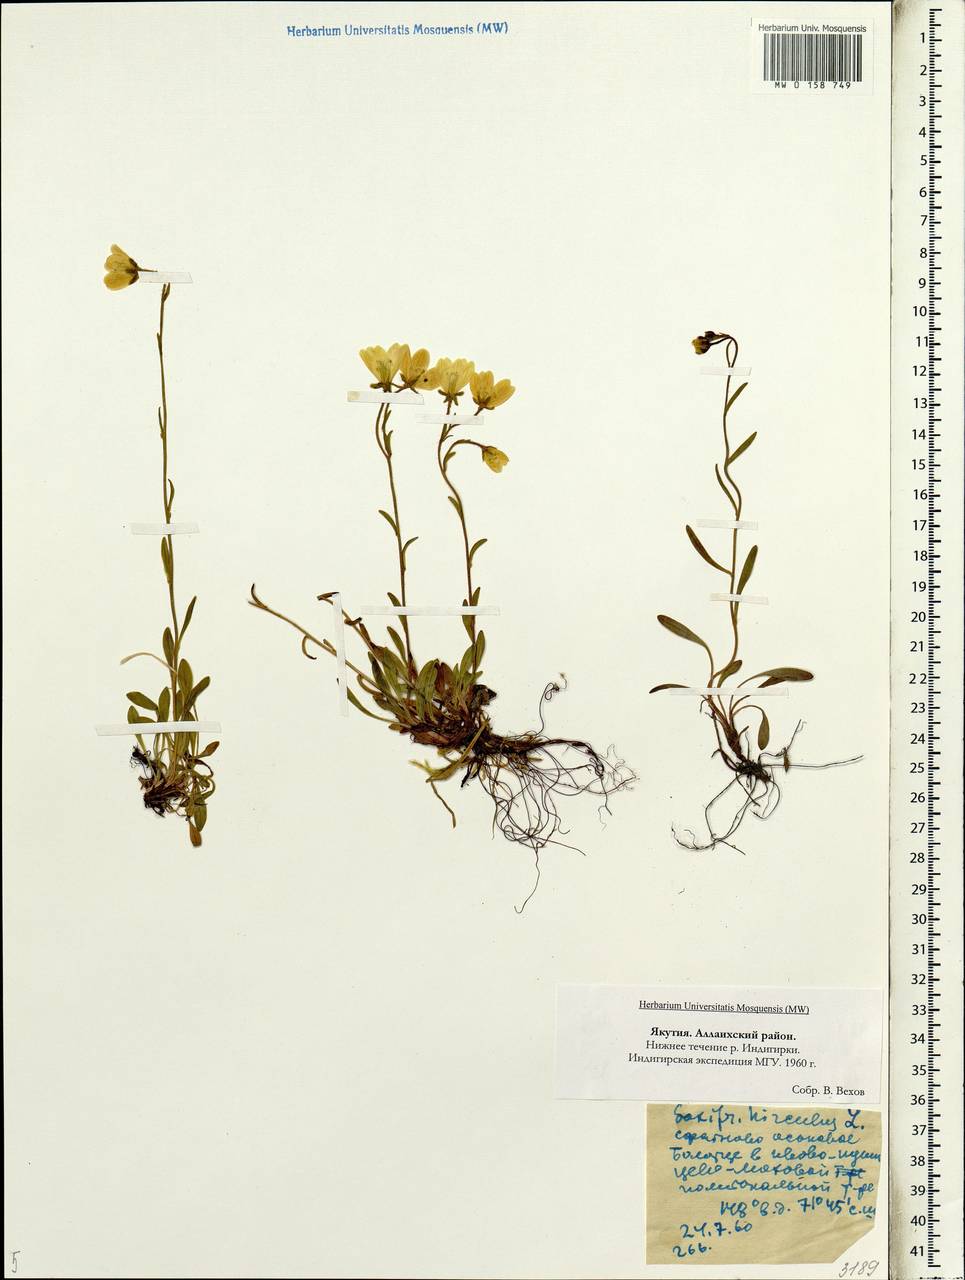 Saxifraga hirculus, Siberia, Yakutia (S5) (Russia)